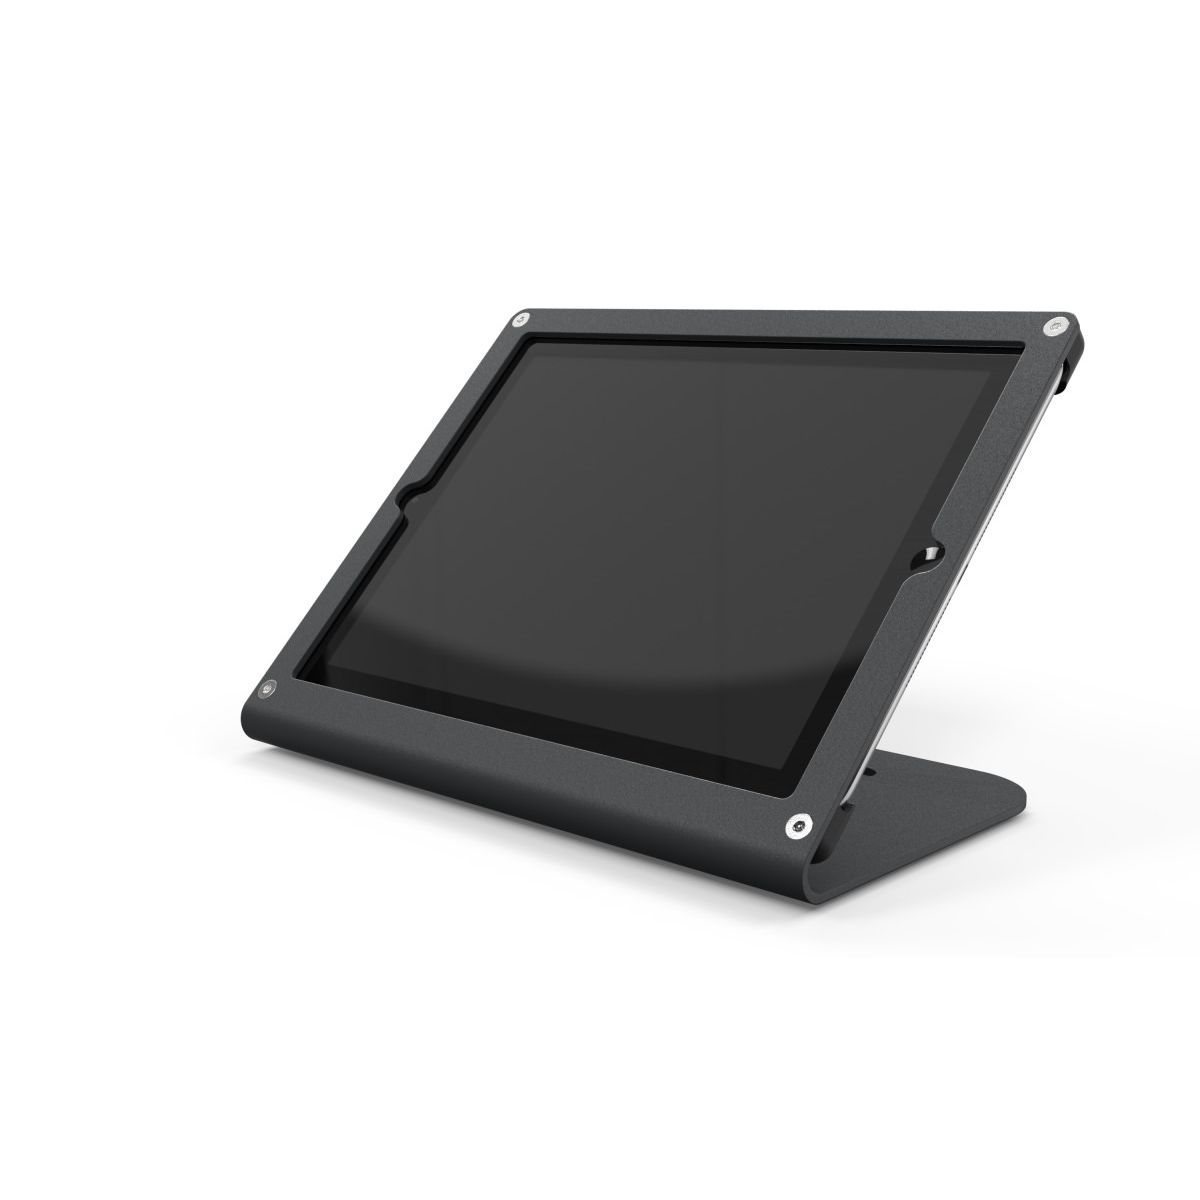 Kan niet school Vooruitgang iPad standaard voor iPad 9.7-inch | Heckler Design WindFall -H458X